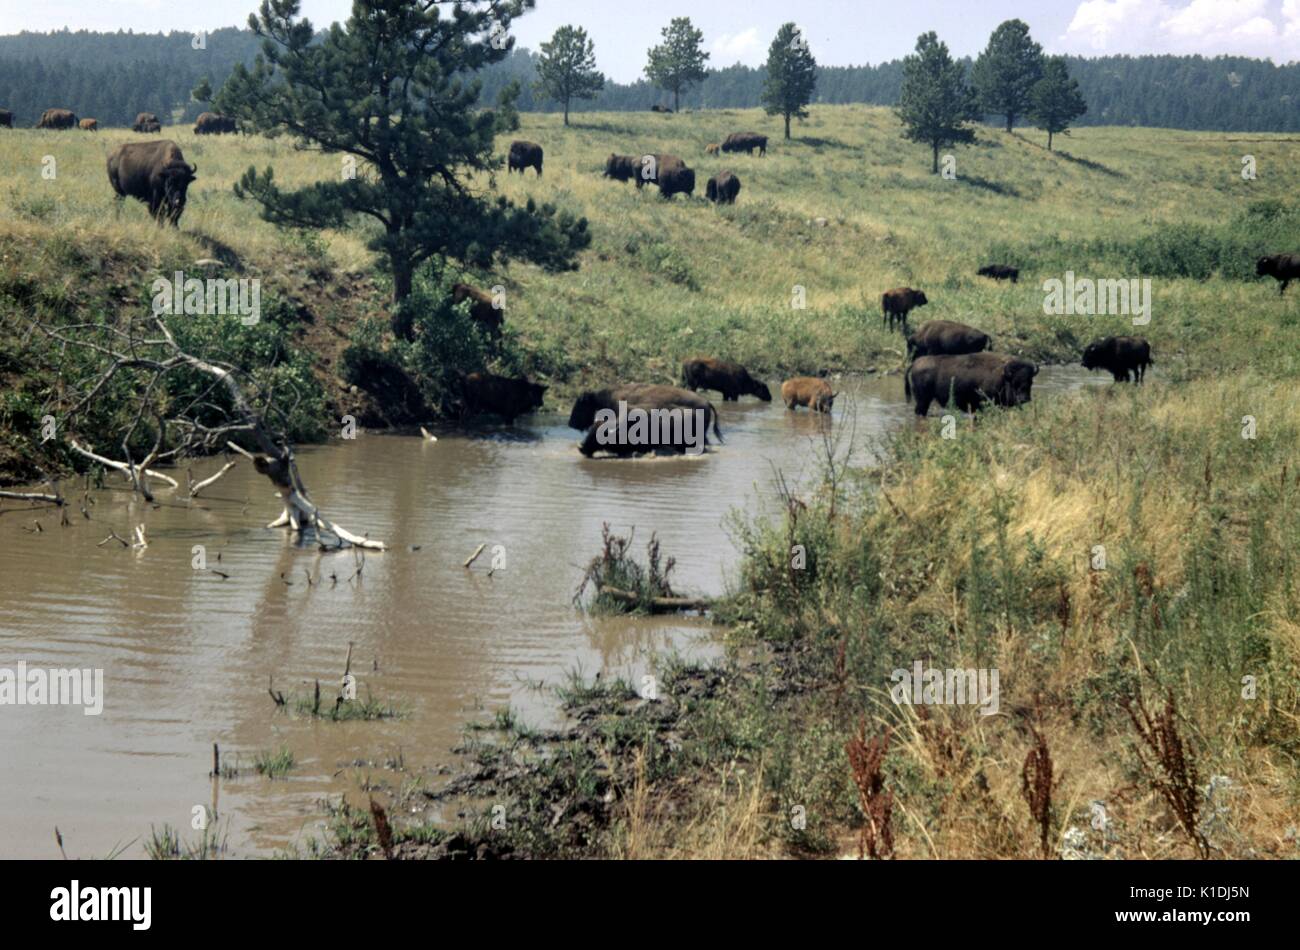 Un troupeau de bisons se rassemblent et se nourrissent, dans et autour d'un point d'eau, les adultes et les jeunes peuvent être vus, les montagnes visibles à l'horizon, Wyoming, 1975. Banque D'Images